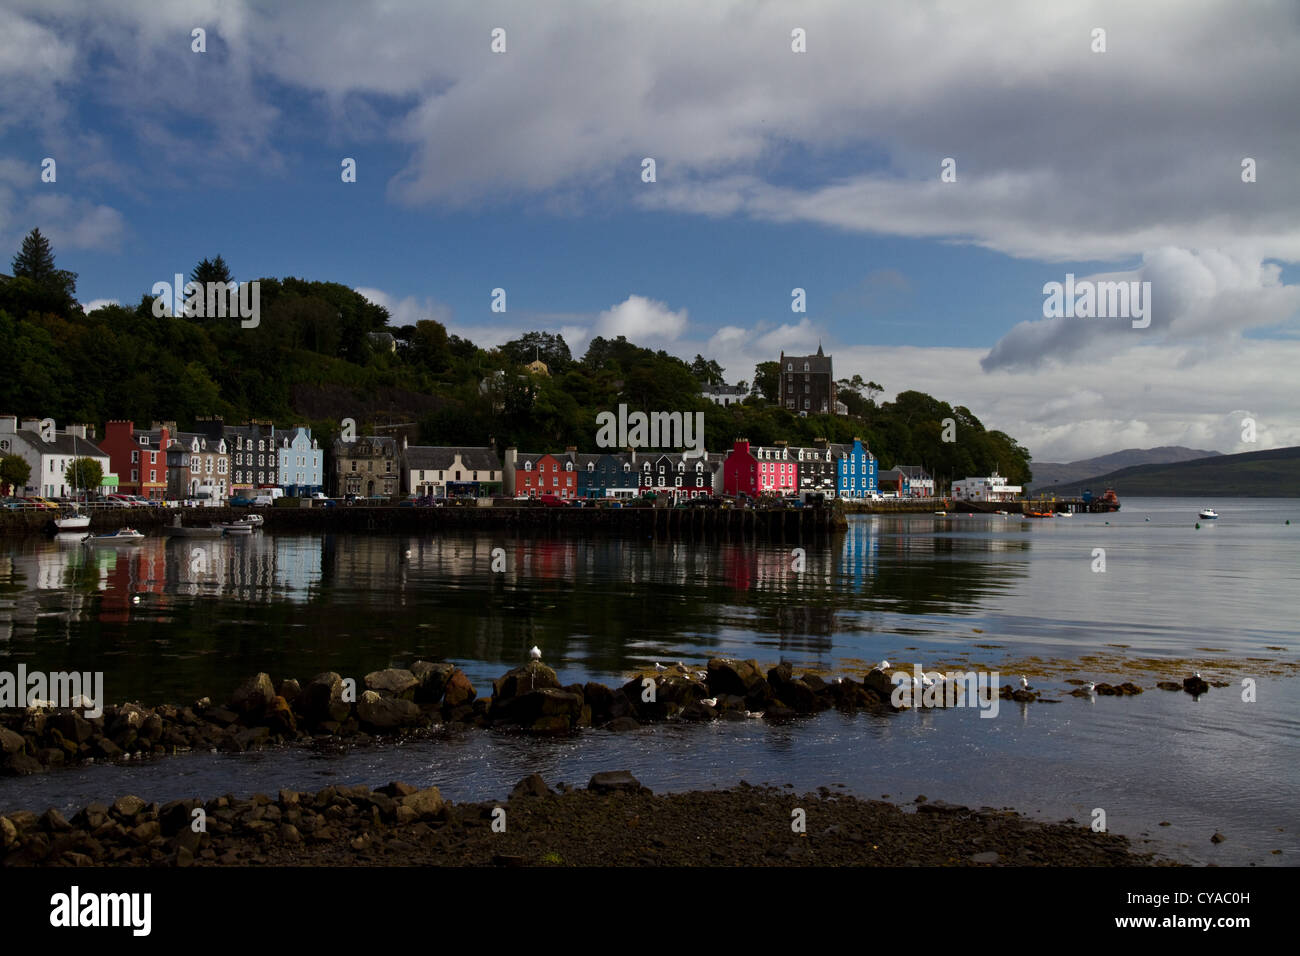 Une belle vue sur le port, à Tobermory, Isle of Mull, Scotland, avec ses célèbres maisons colorées, définition pour séries télé Balamory Banque D'Images